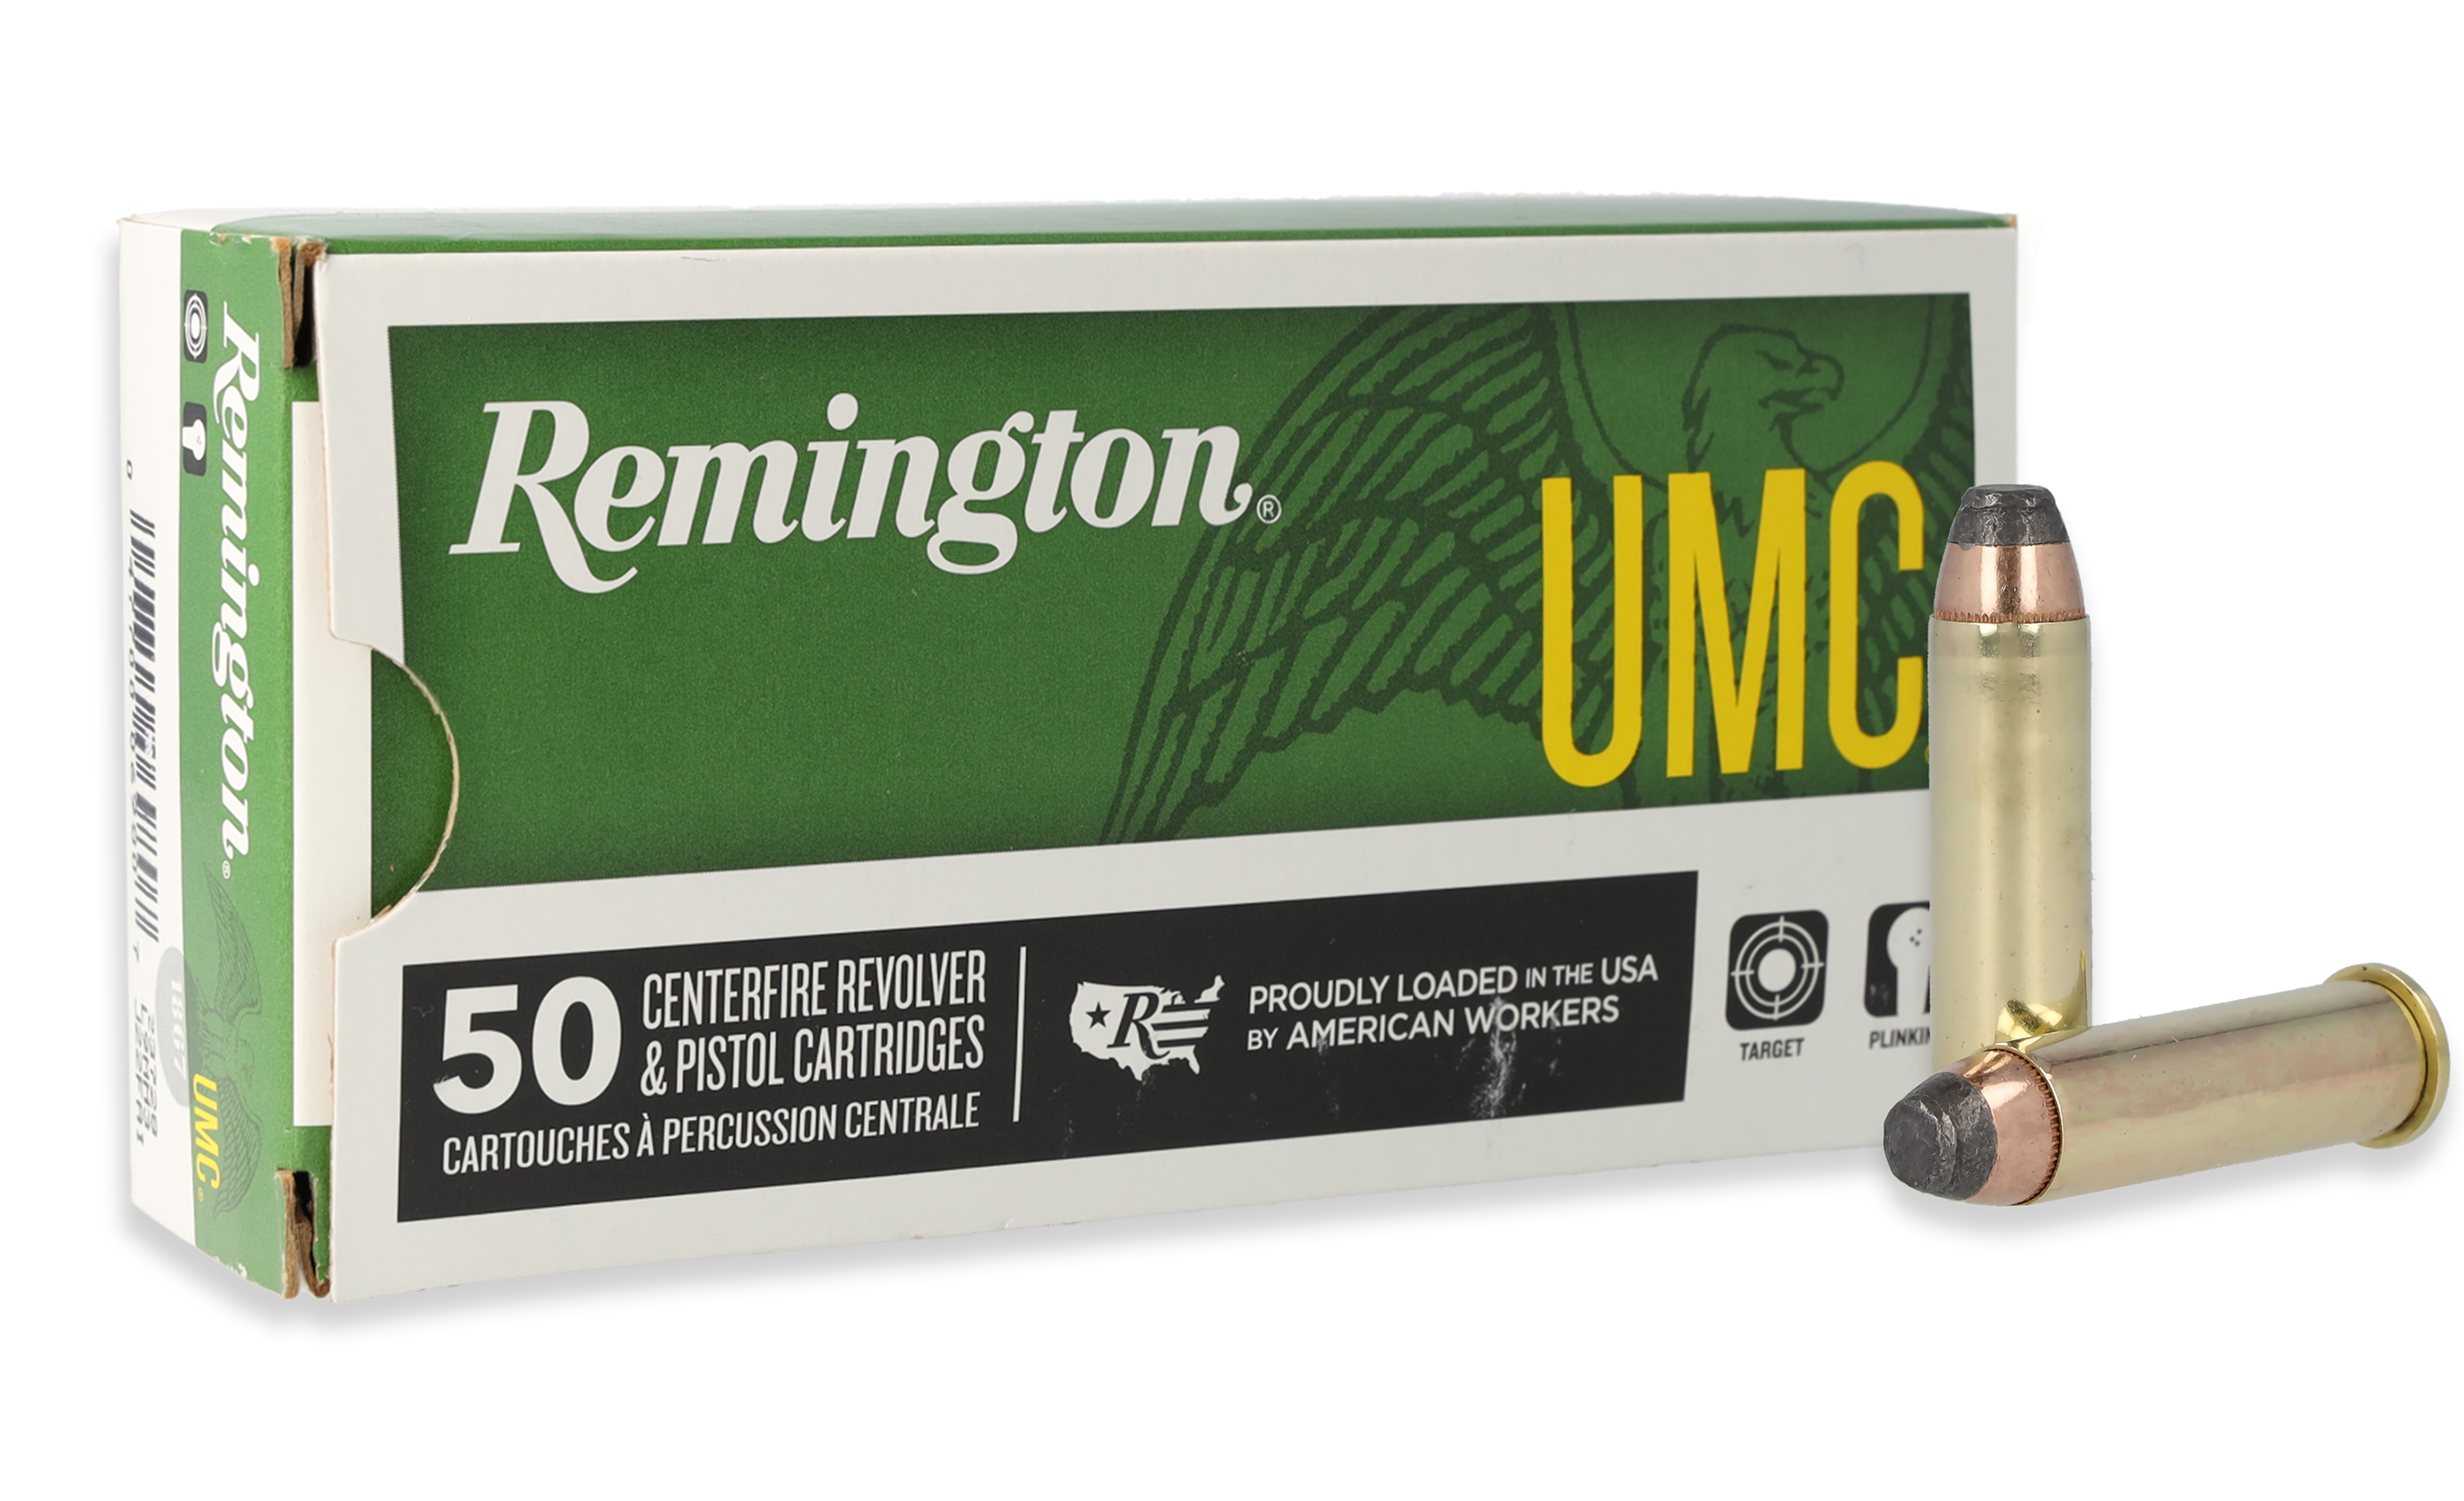 Remington UMC .357 Magnum 125 Grain Jacketed Soft Point Handgun Ammo